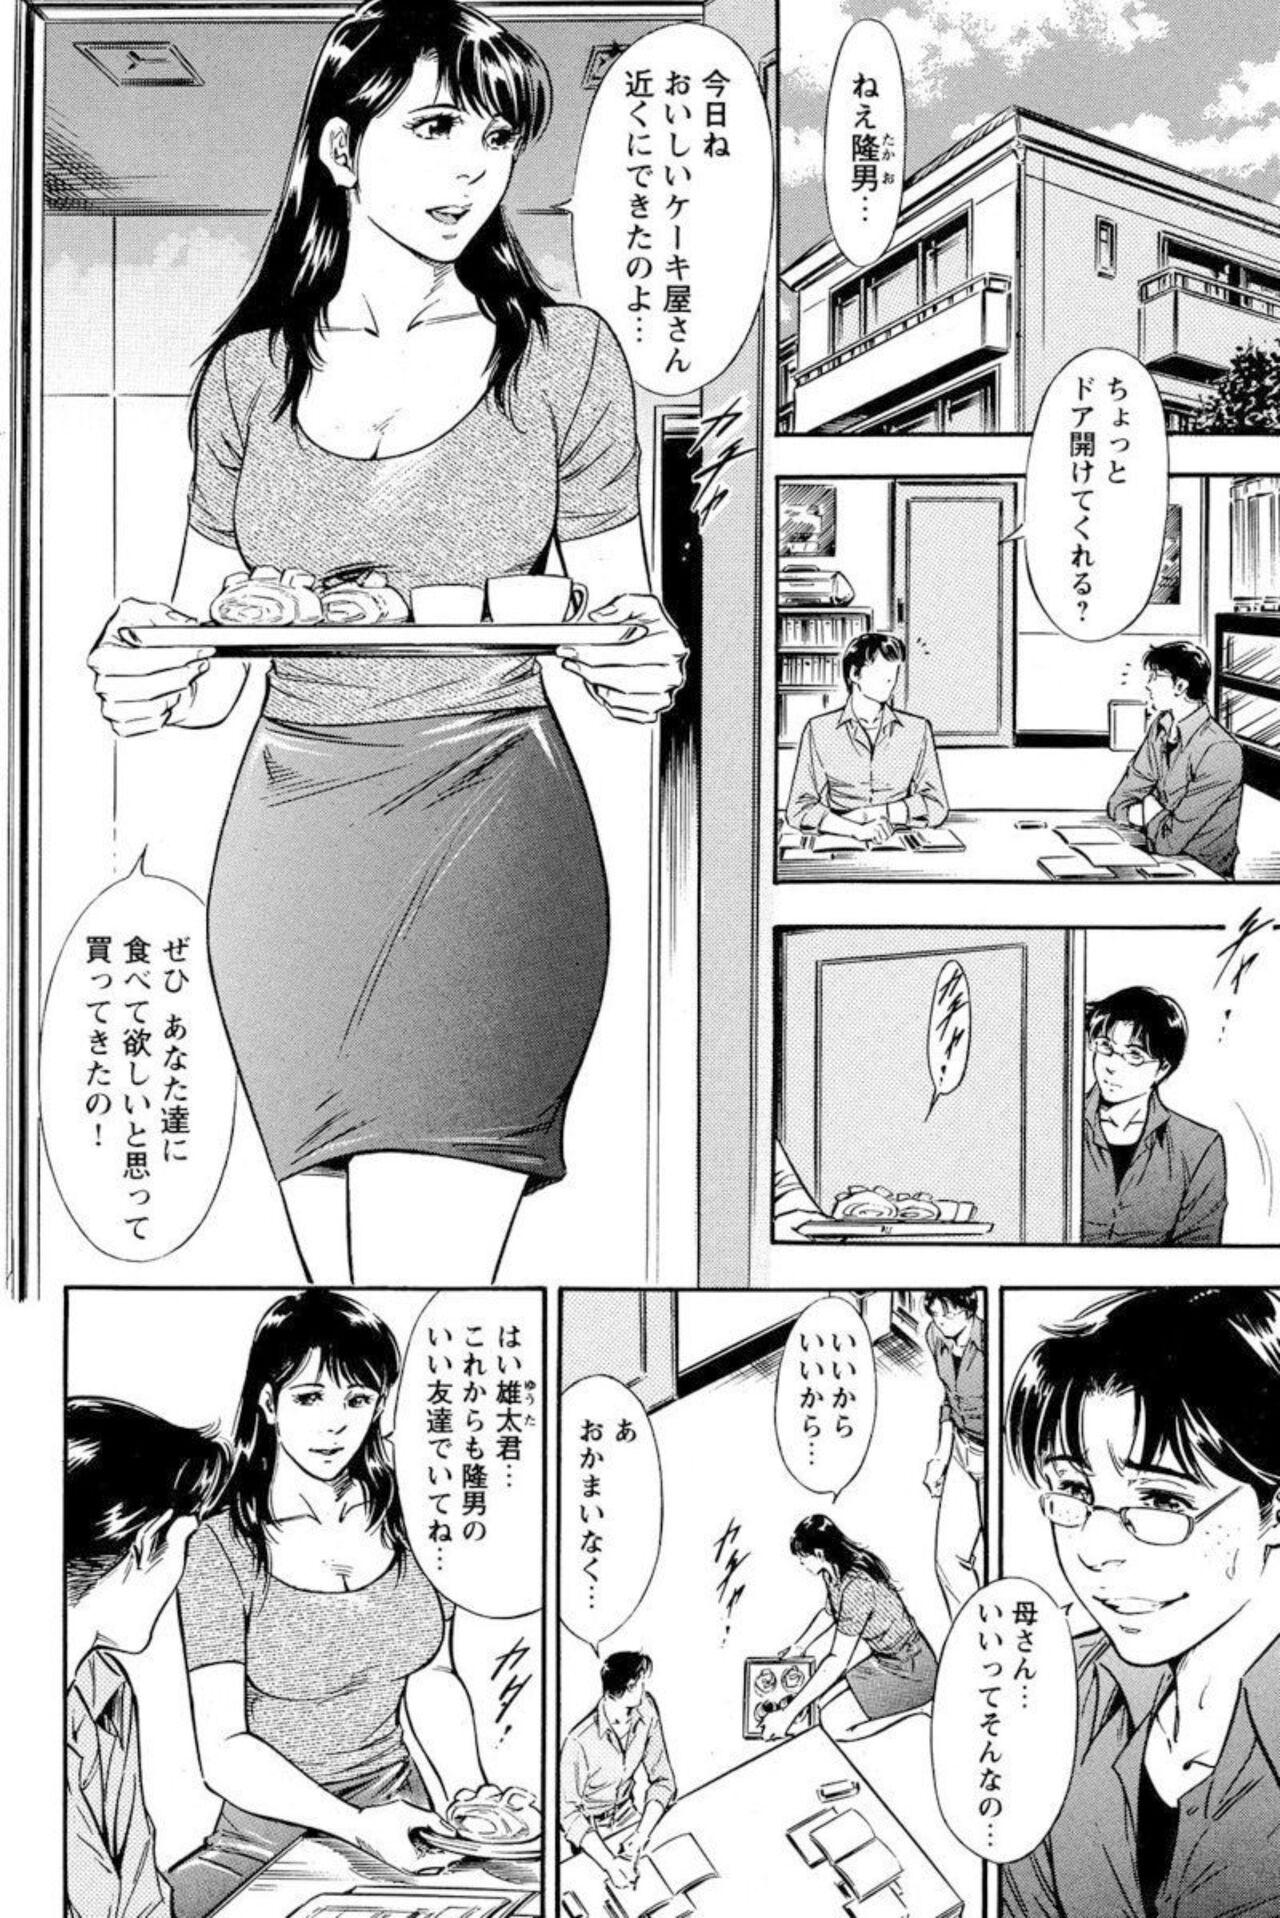 Bear Yūjin no Haha ni Yukkuri Dashi re 【 Bunsatsuban 】1 Creampies - Page 4